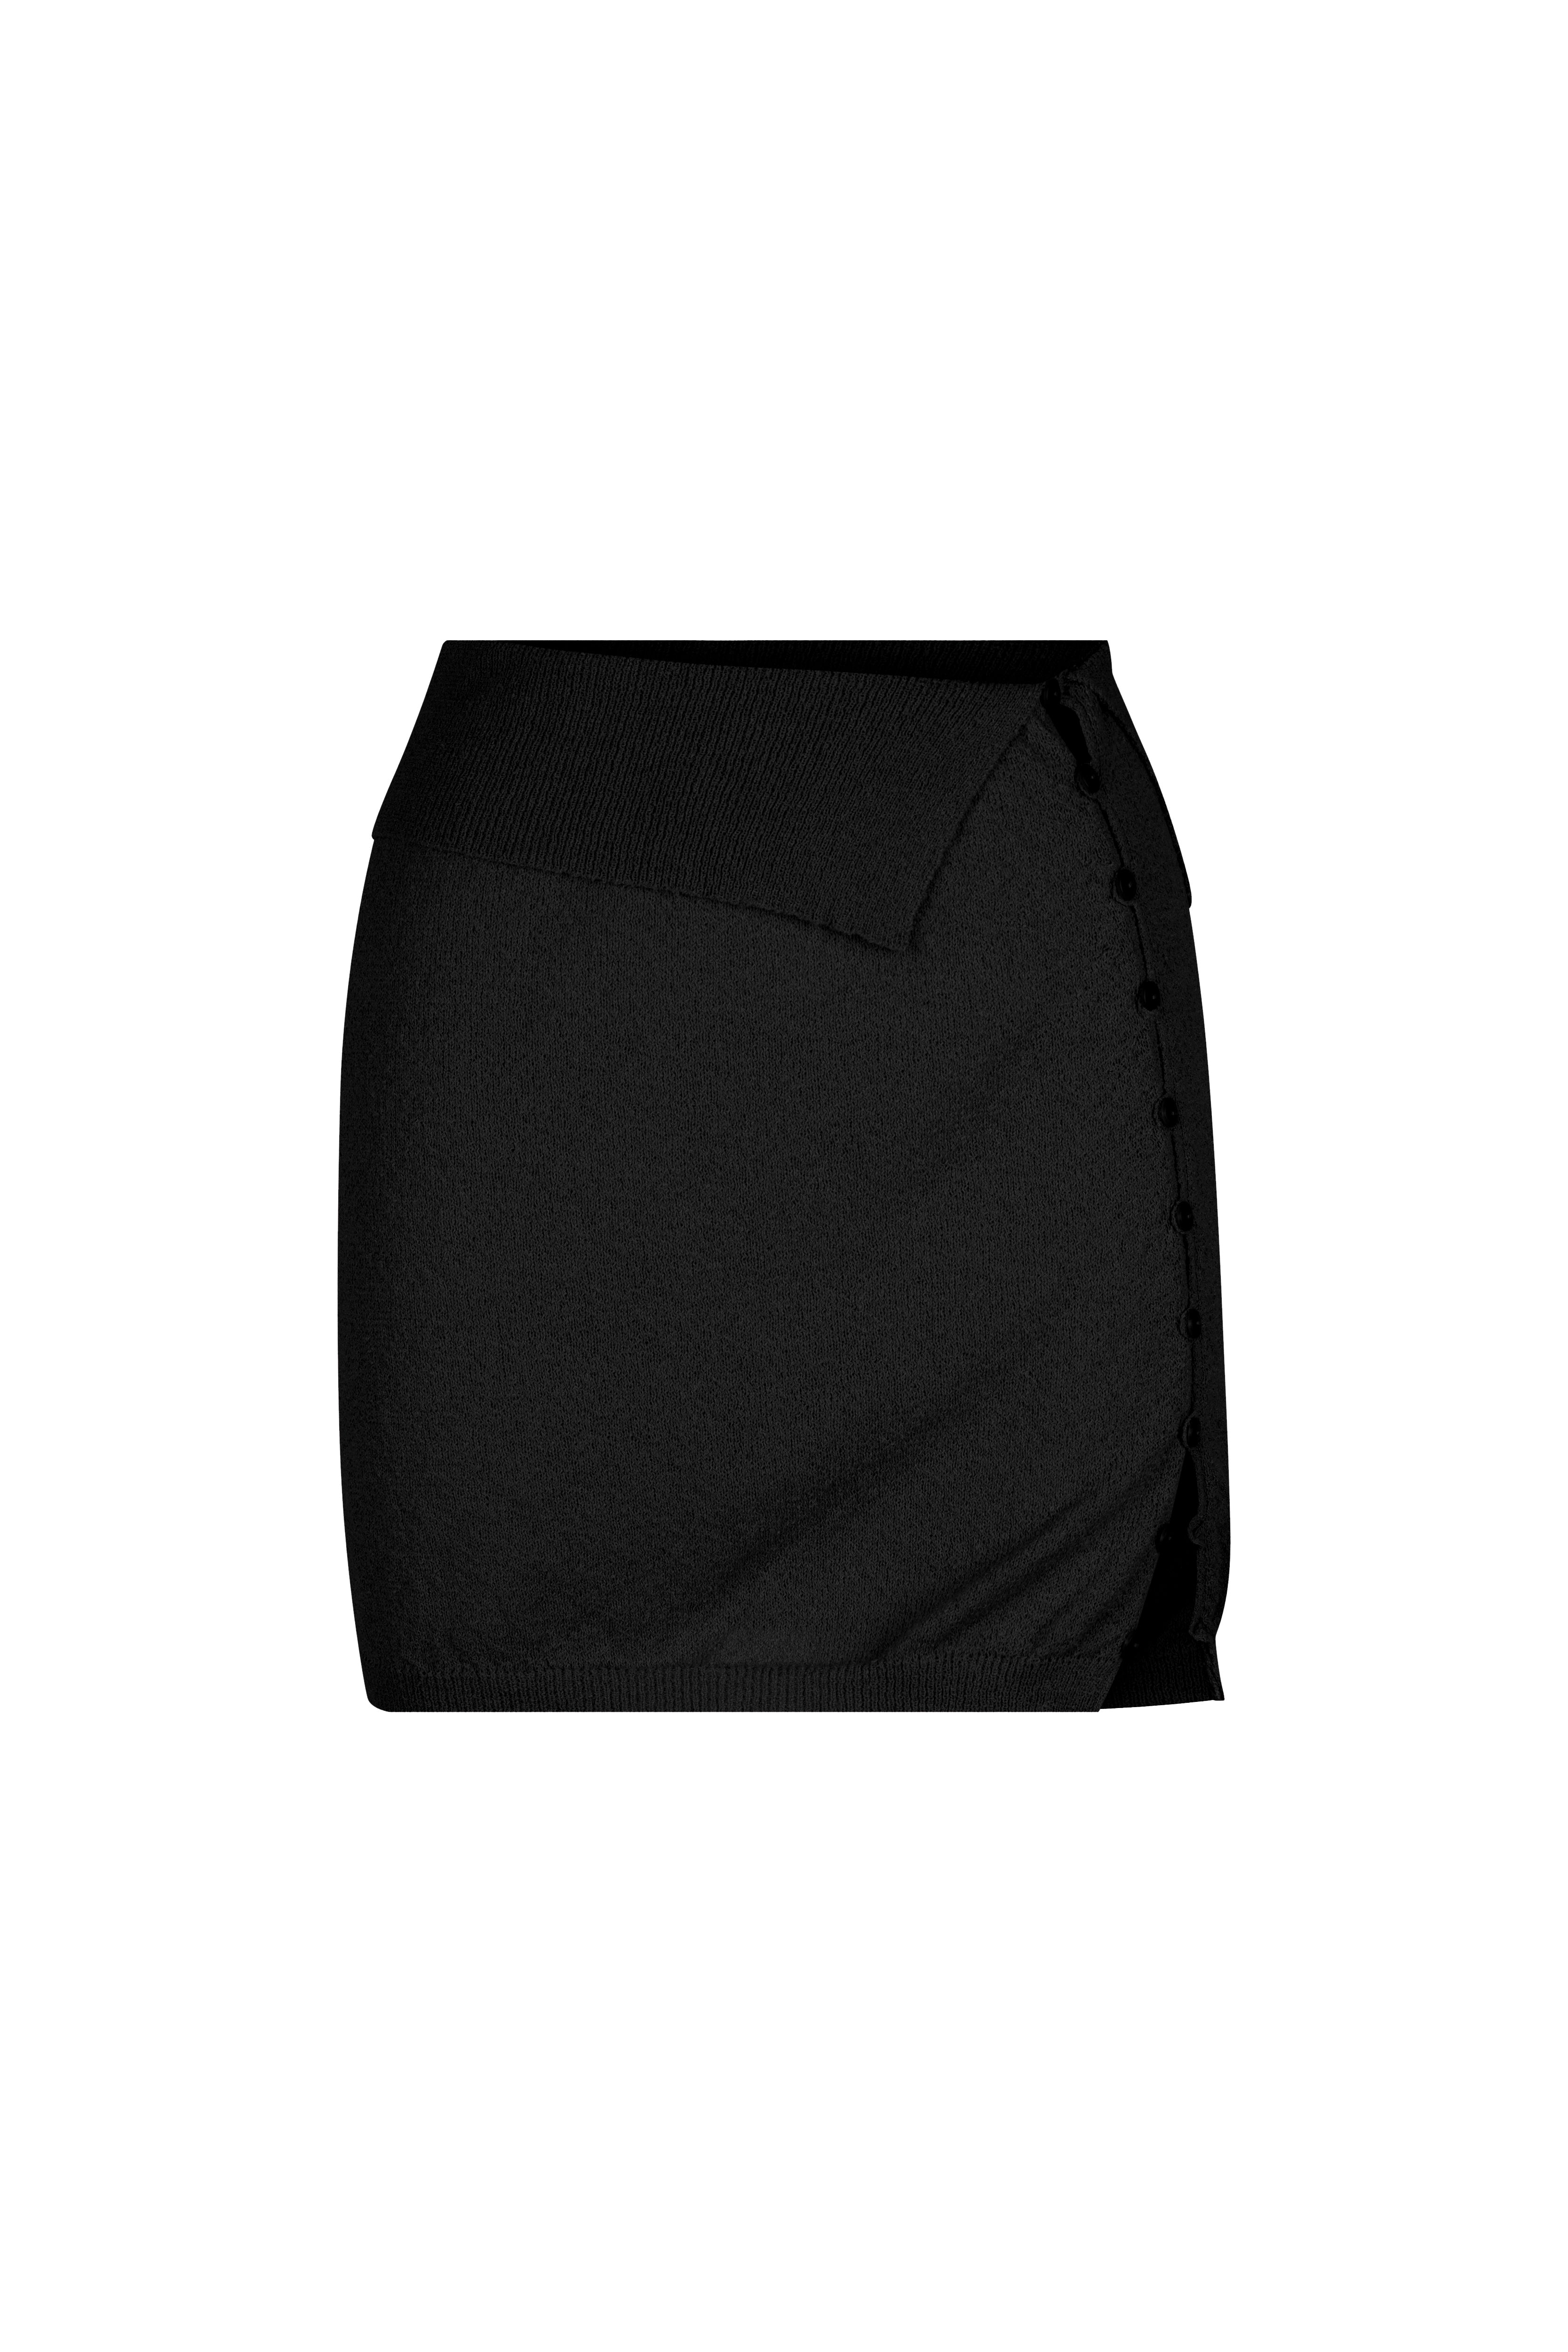 Minogue Knit Mini Skirt // Black